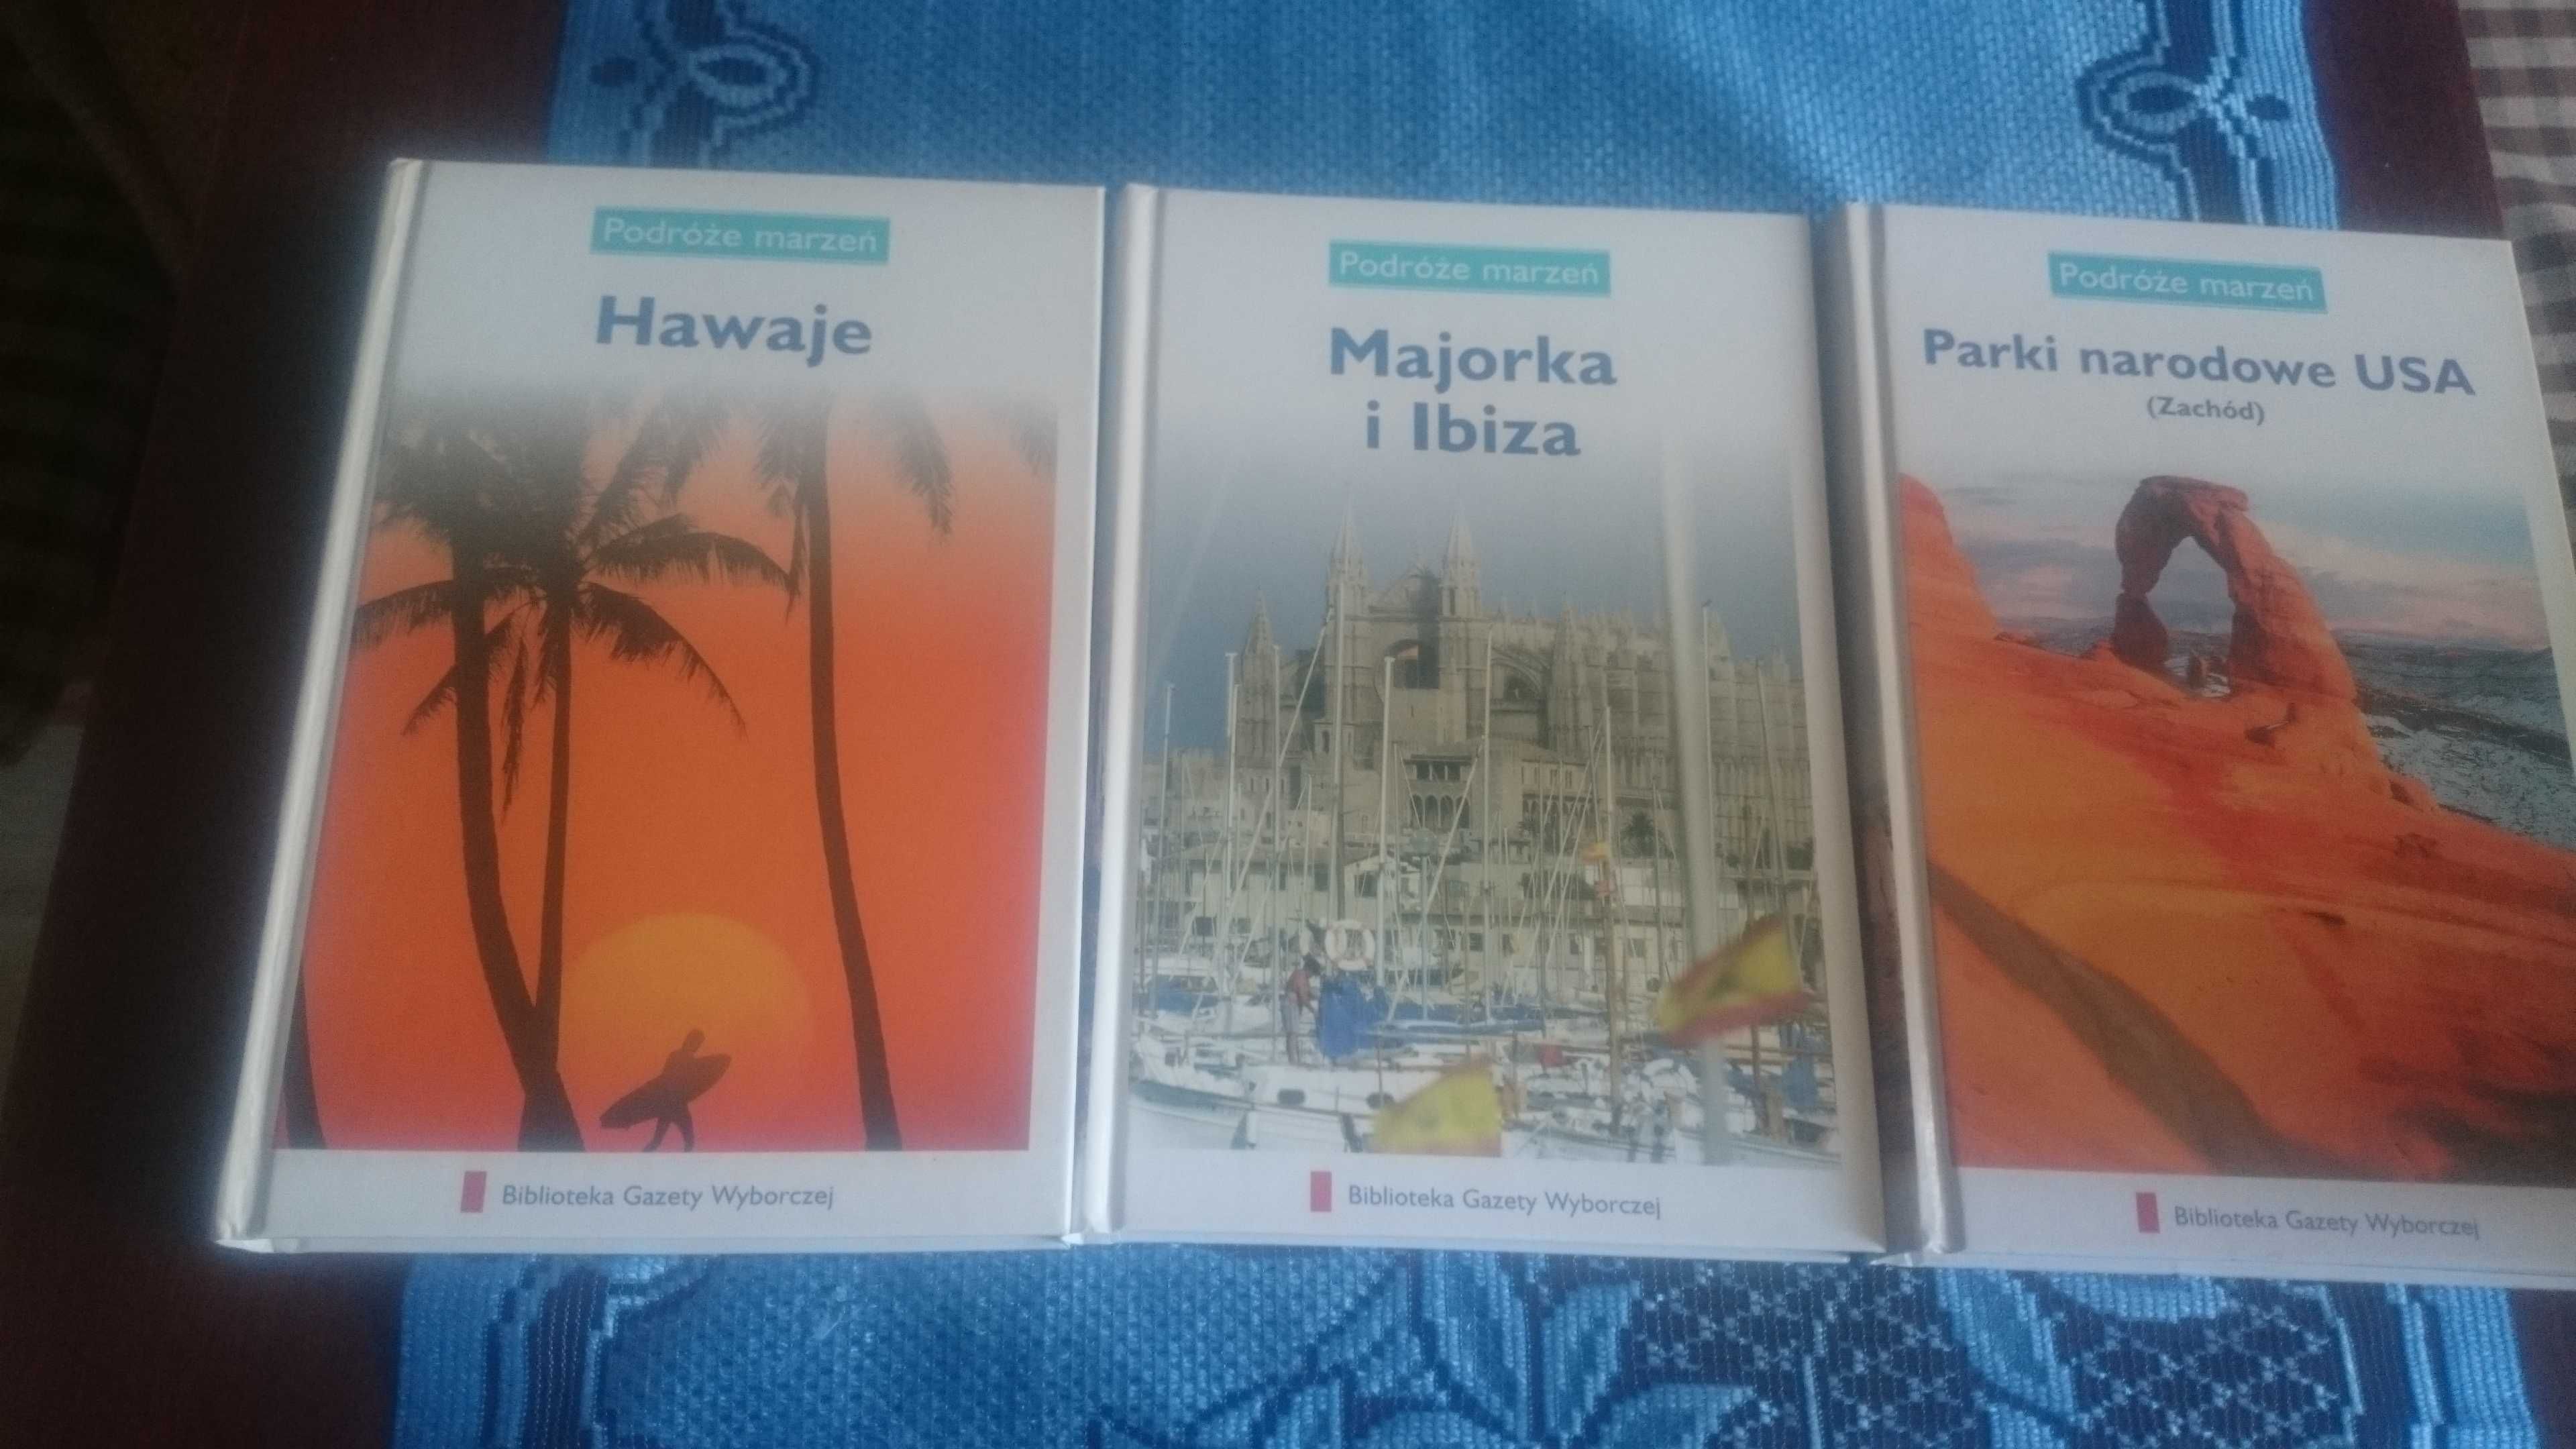 Hawaje/Majorka i Ibiza/Parki Narodowe USA